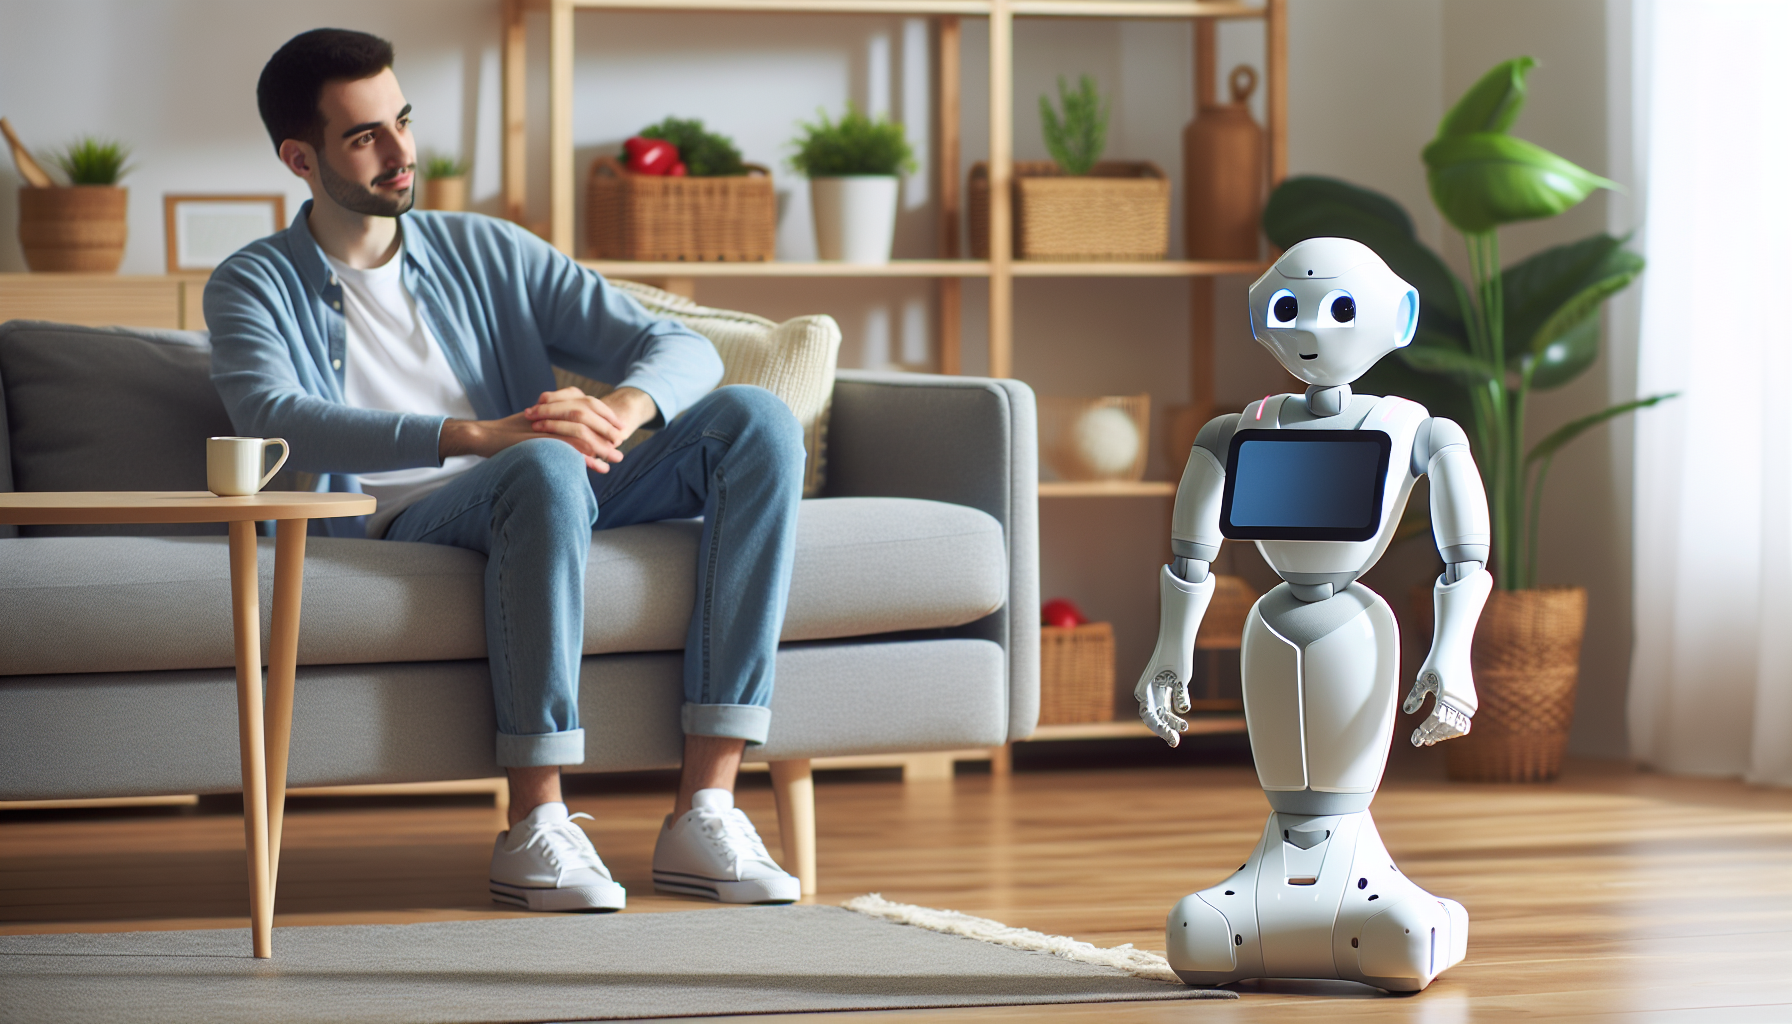 ontdek alles over pepper, de sociale robot van softbank - de kenmerken, het gebruik ervan en de impact ervan op de samenleving.